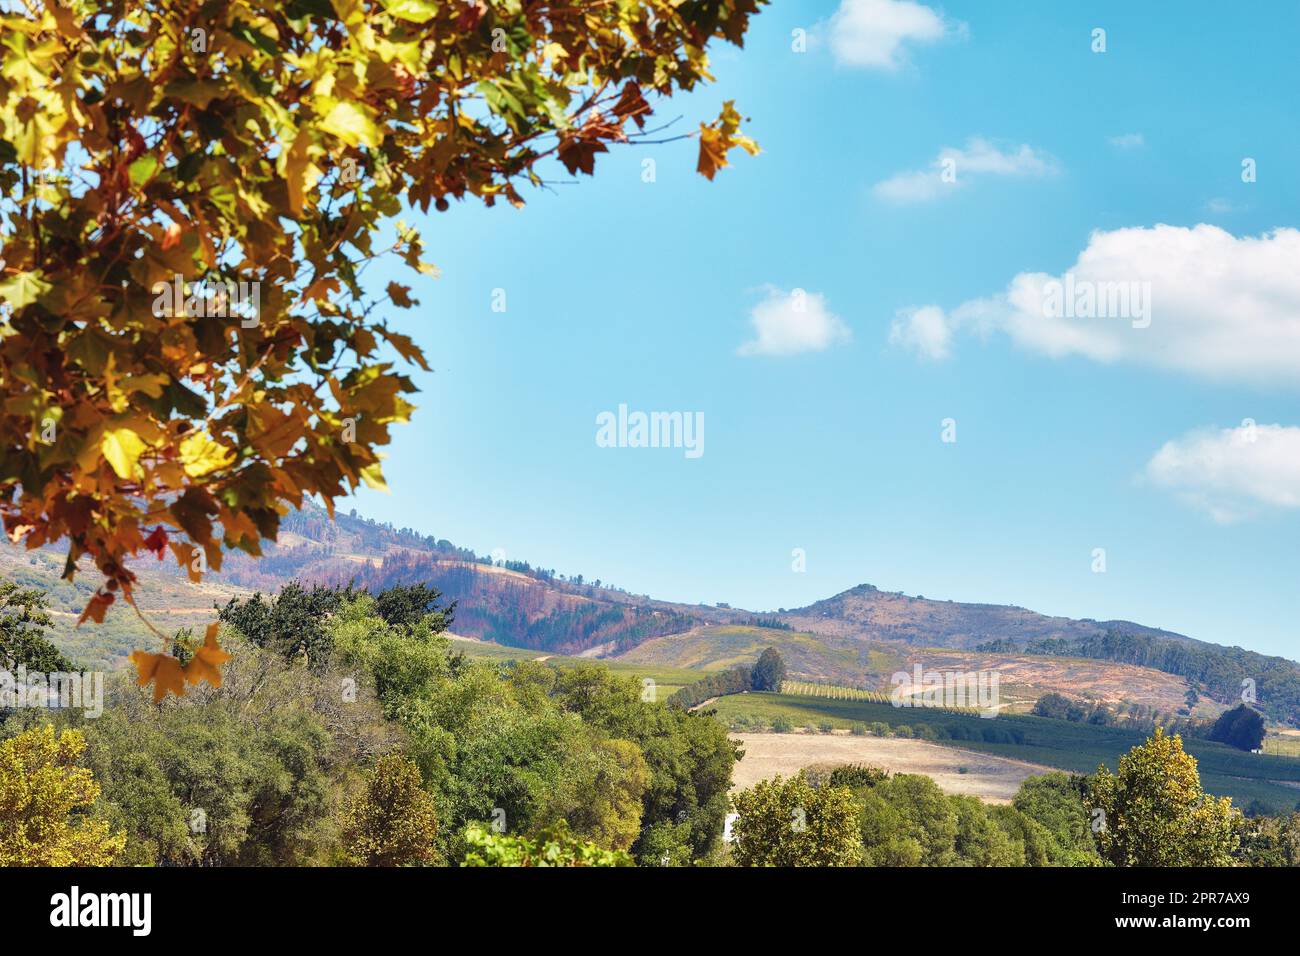 Foglie autunnali e alberi vivaci sul fianco della montagna in Sudafrica, Western Cape. Vista panoramica del terreno naturale con cielo blu nuvoloso e flora indigena. Agricoltura con fondo viticolo Foto Stock